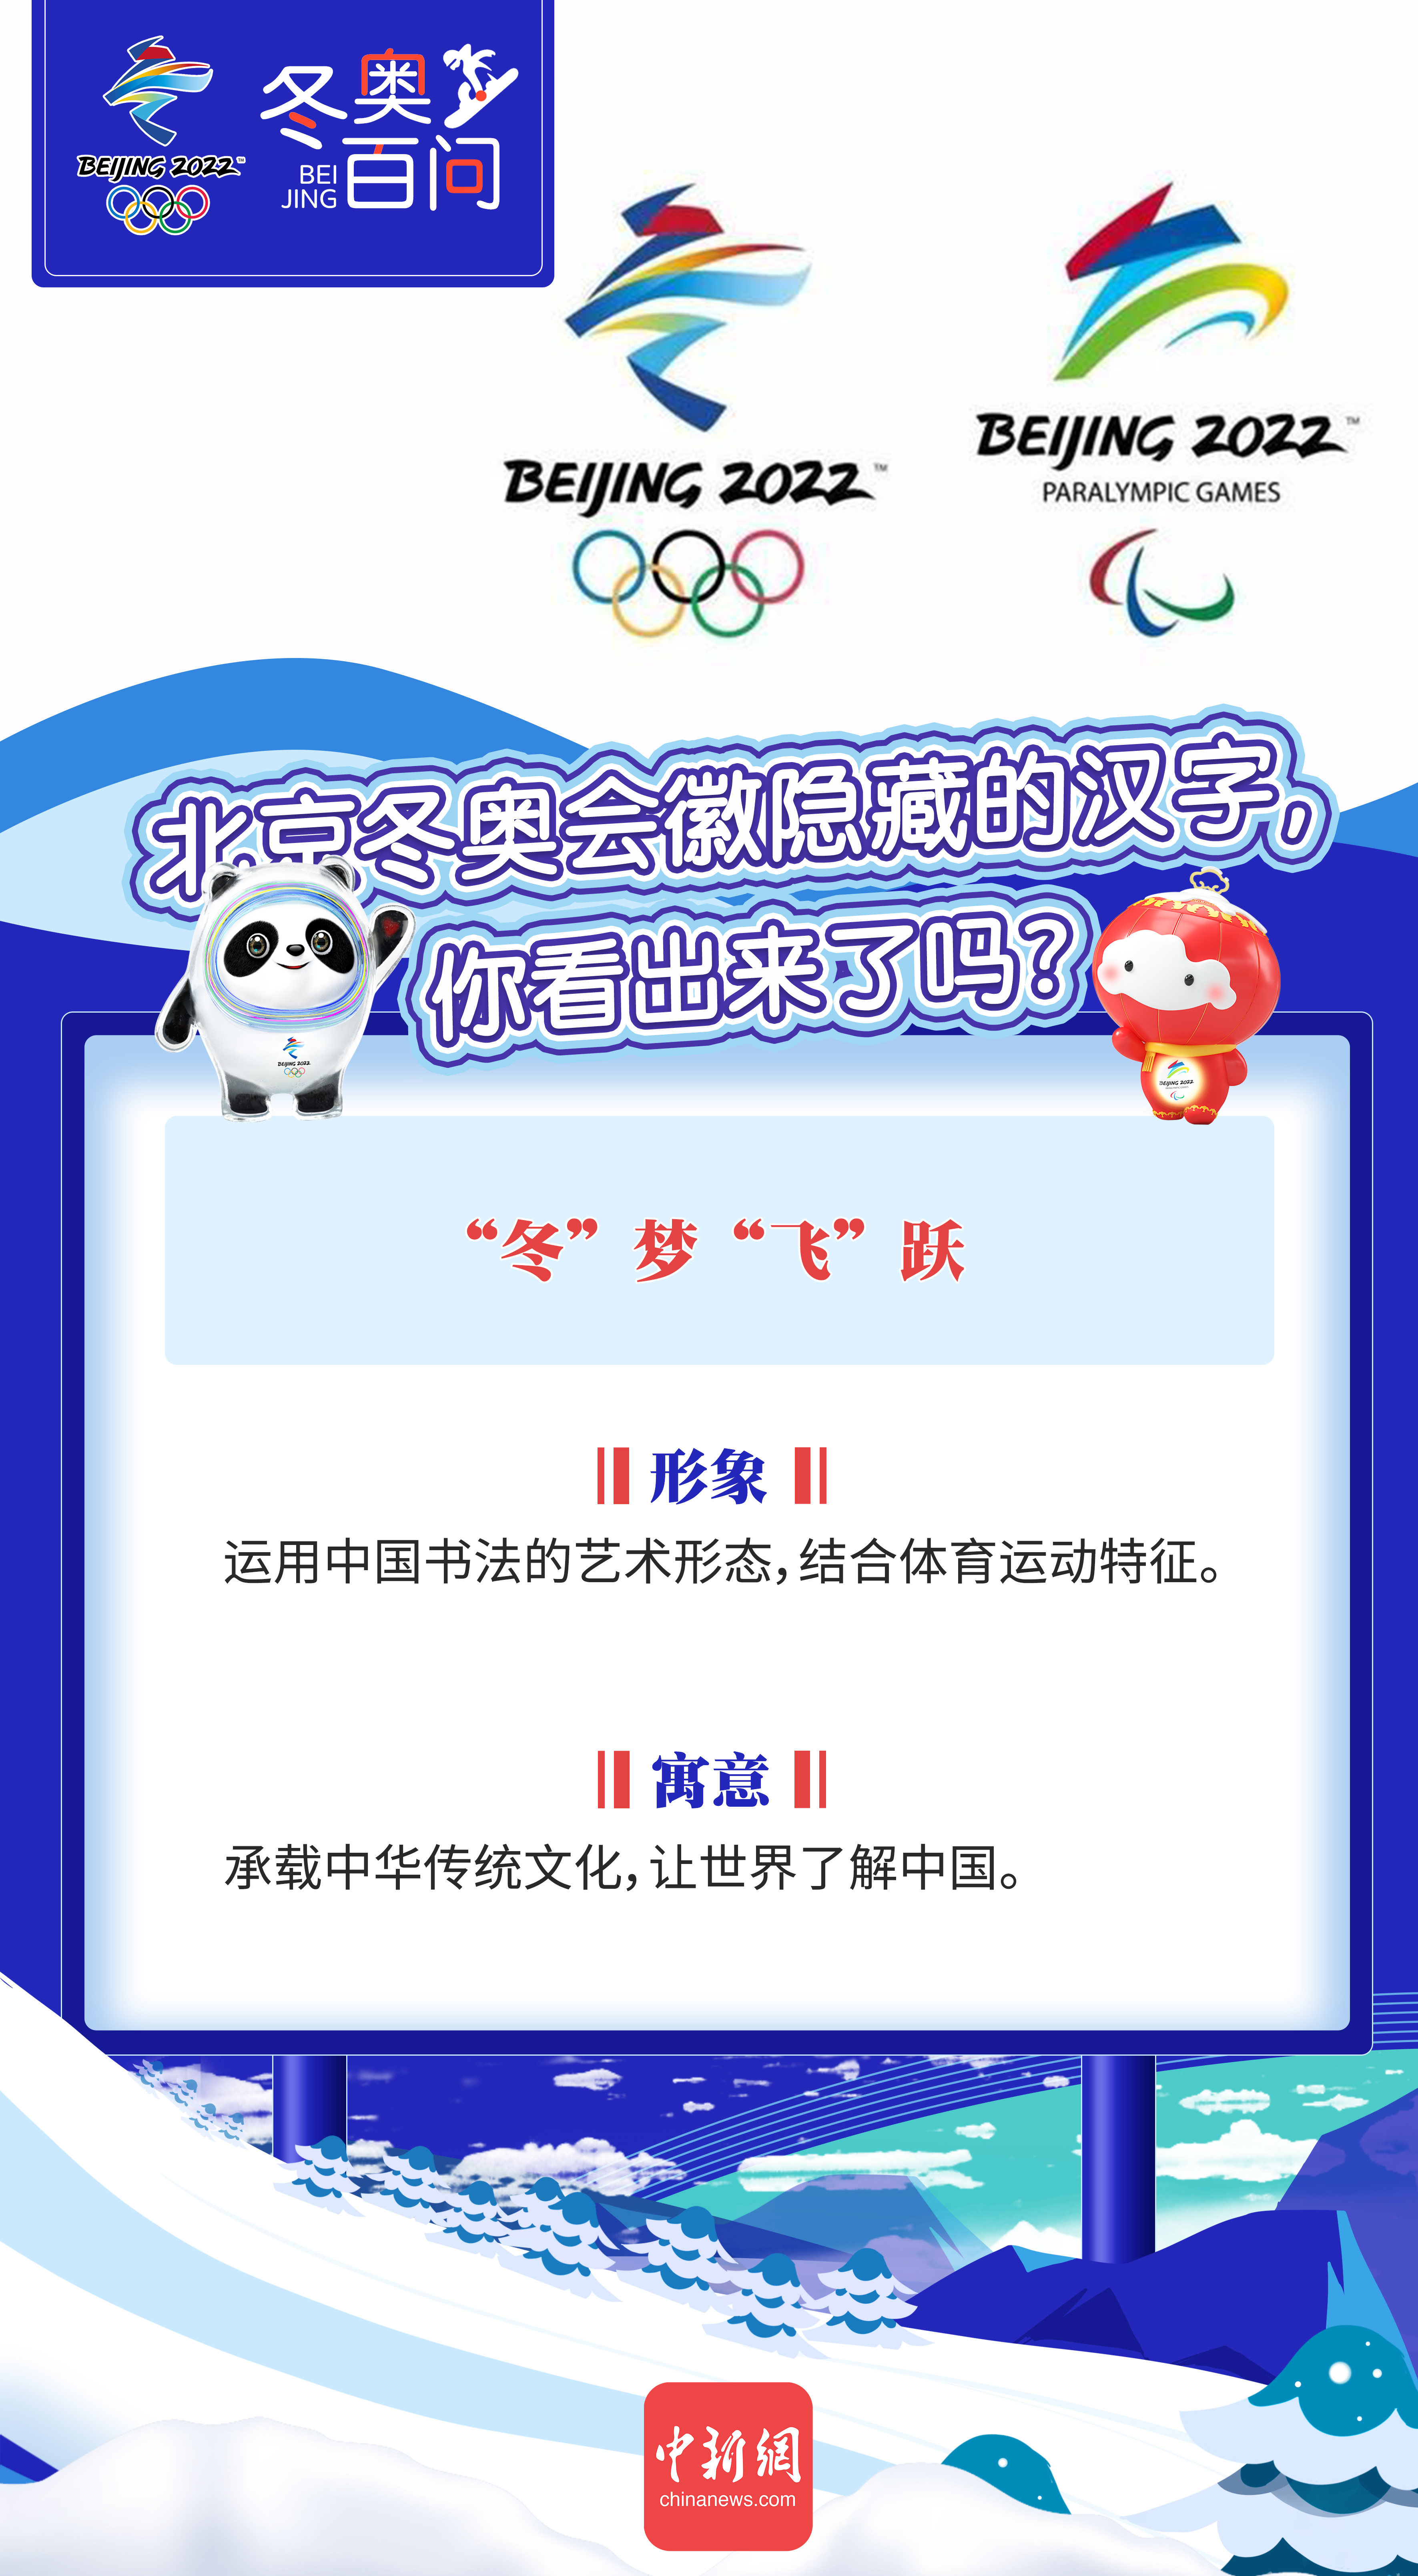 冬奥百问丨北京冬奥会徽隐藏的汉字你看出来了吗